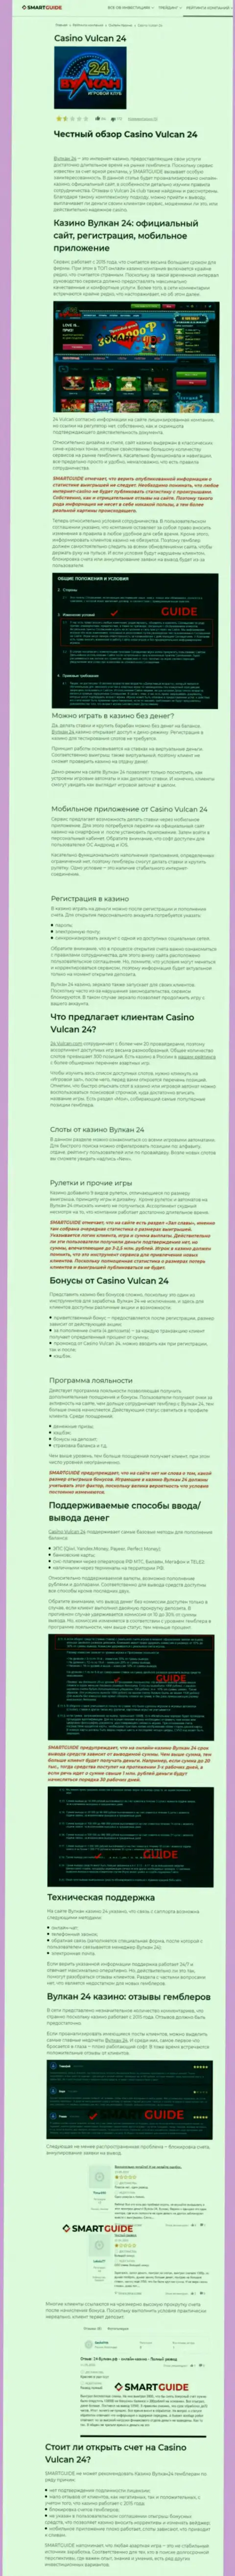 Вулкан-24 Ком - это компания, которая зарабатывает на воровстве денежных средств собственных клиентов (обзор махинаций)